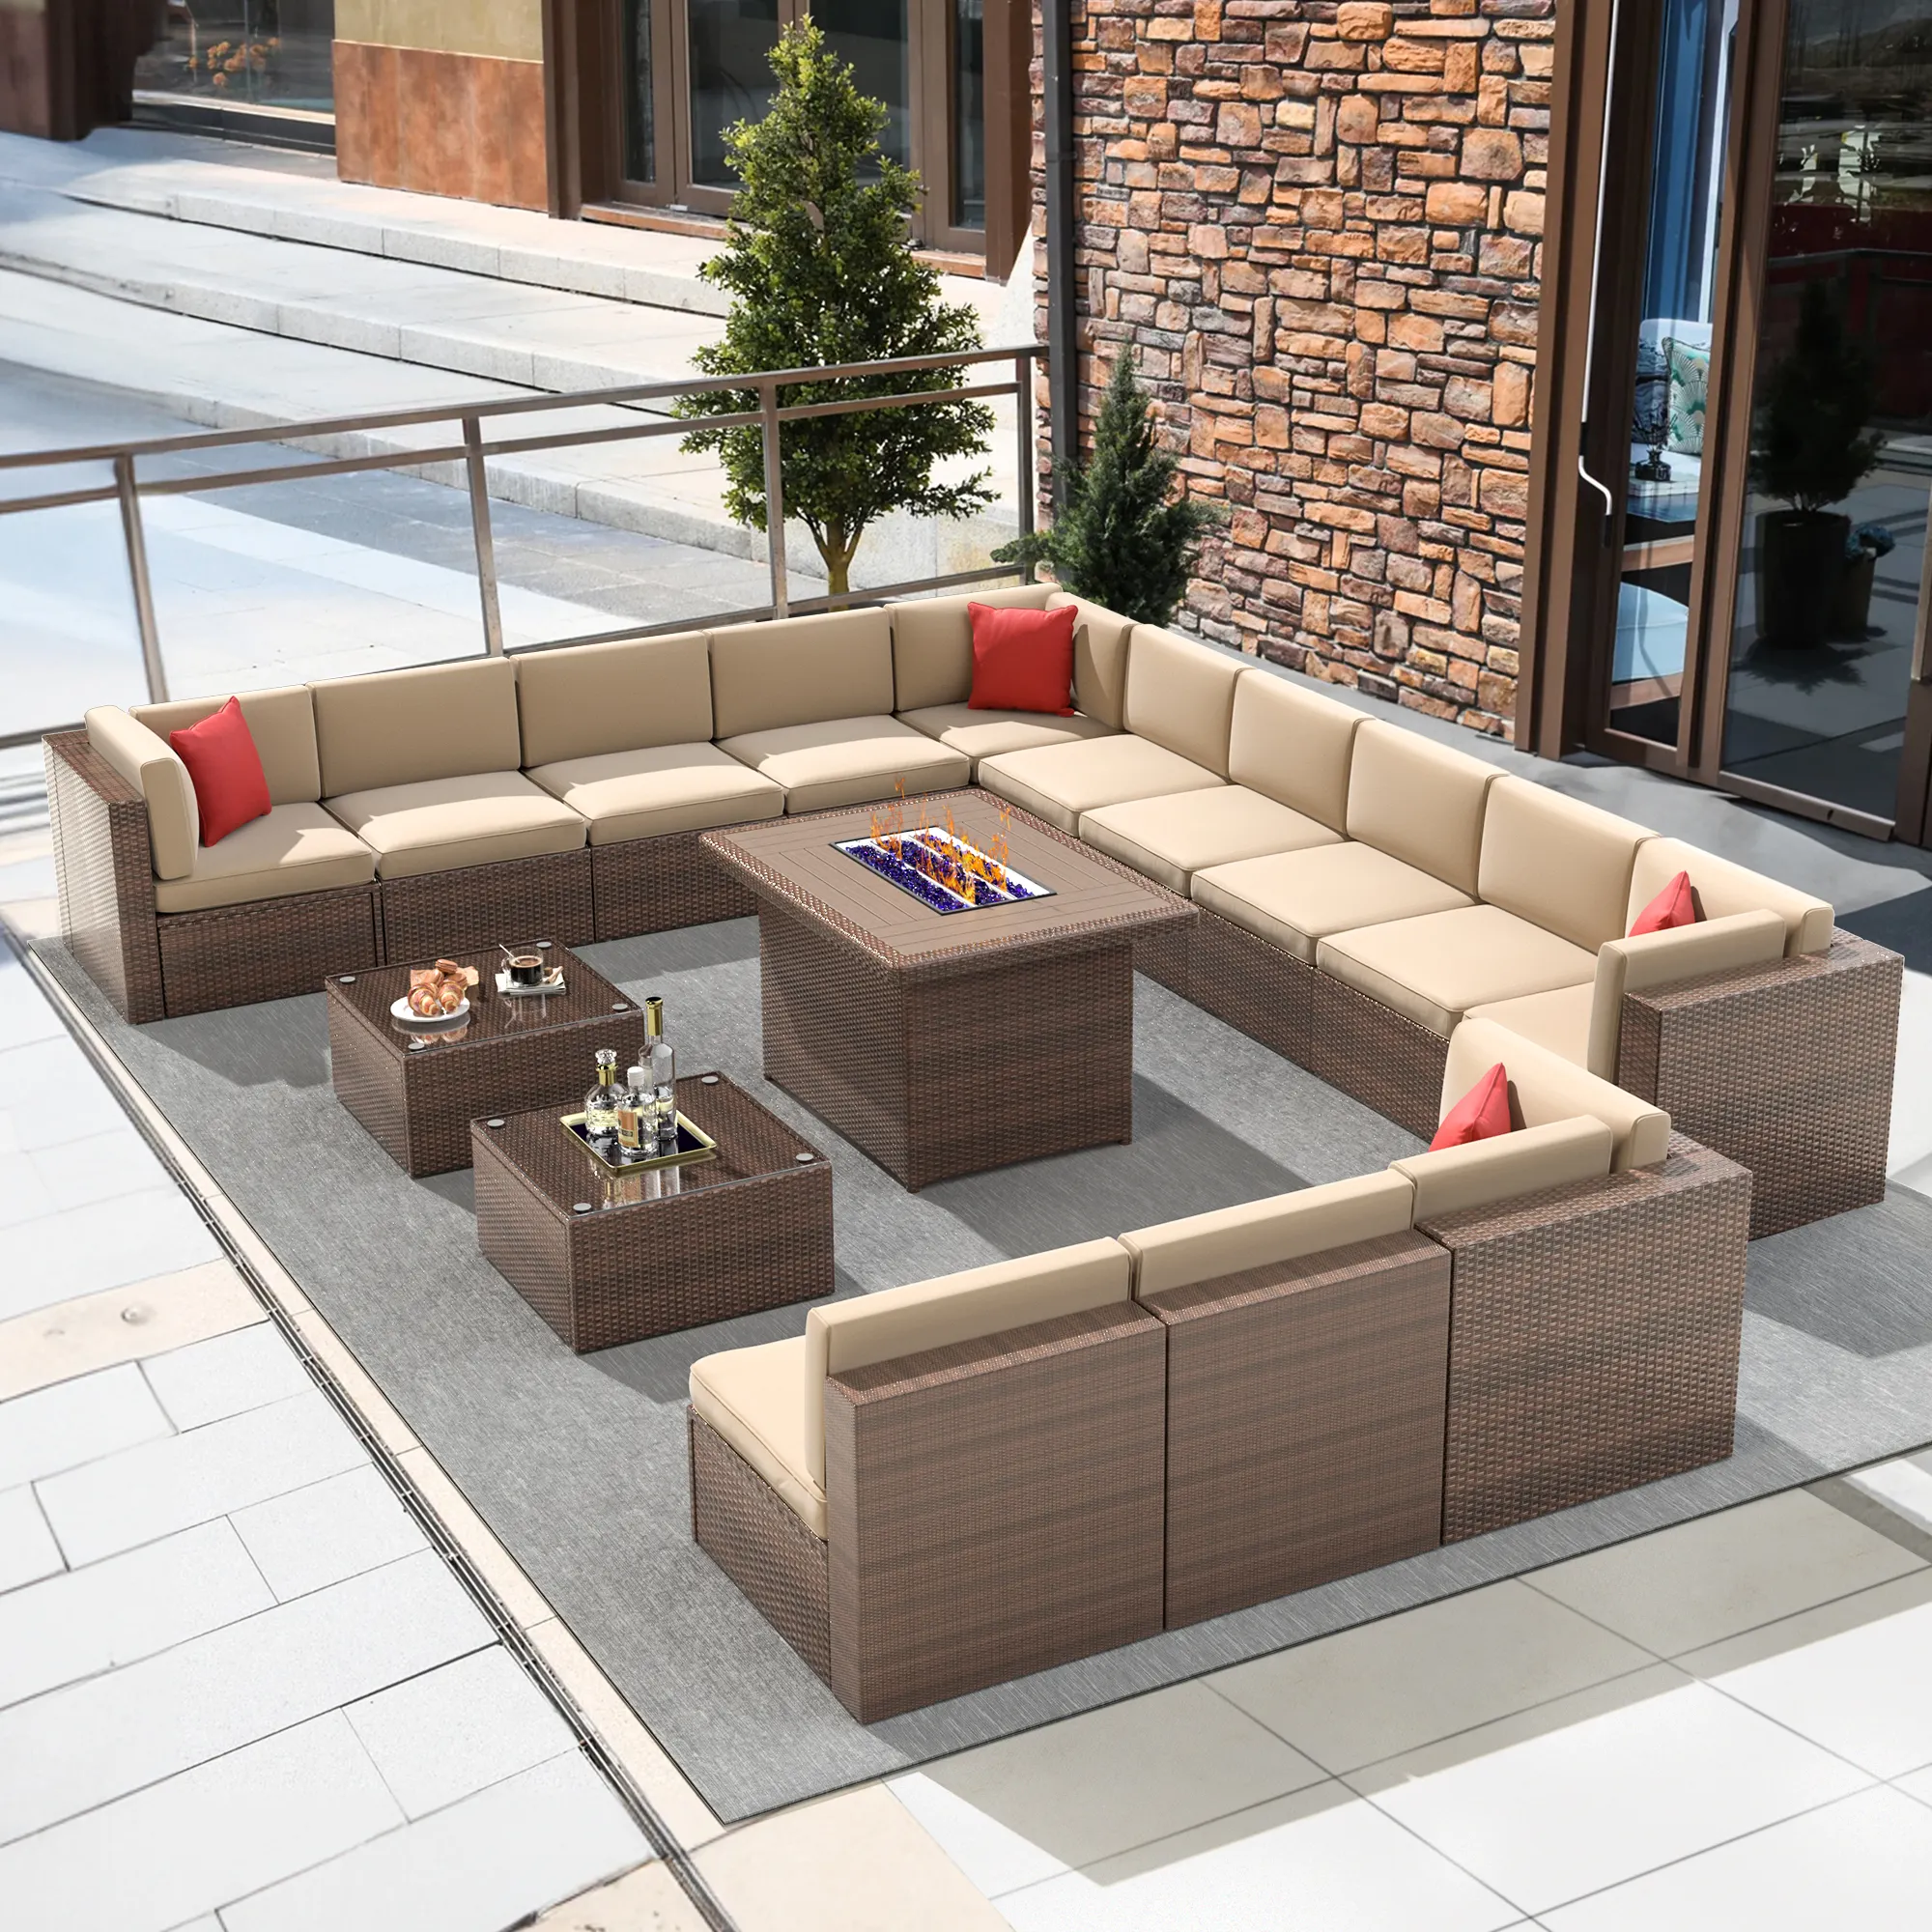 Bahçe mobilyaları modüler kesit açık koltuk takımı 15 adet gri alüminyum Platform salonlar bahçe salon seti